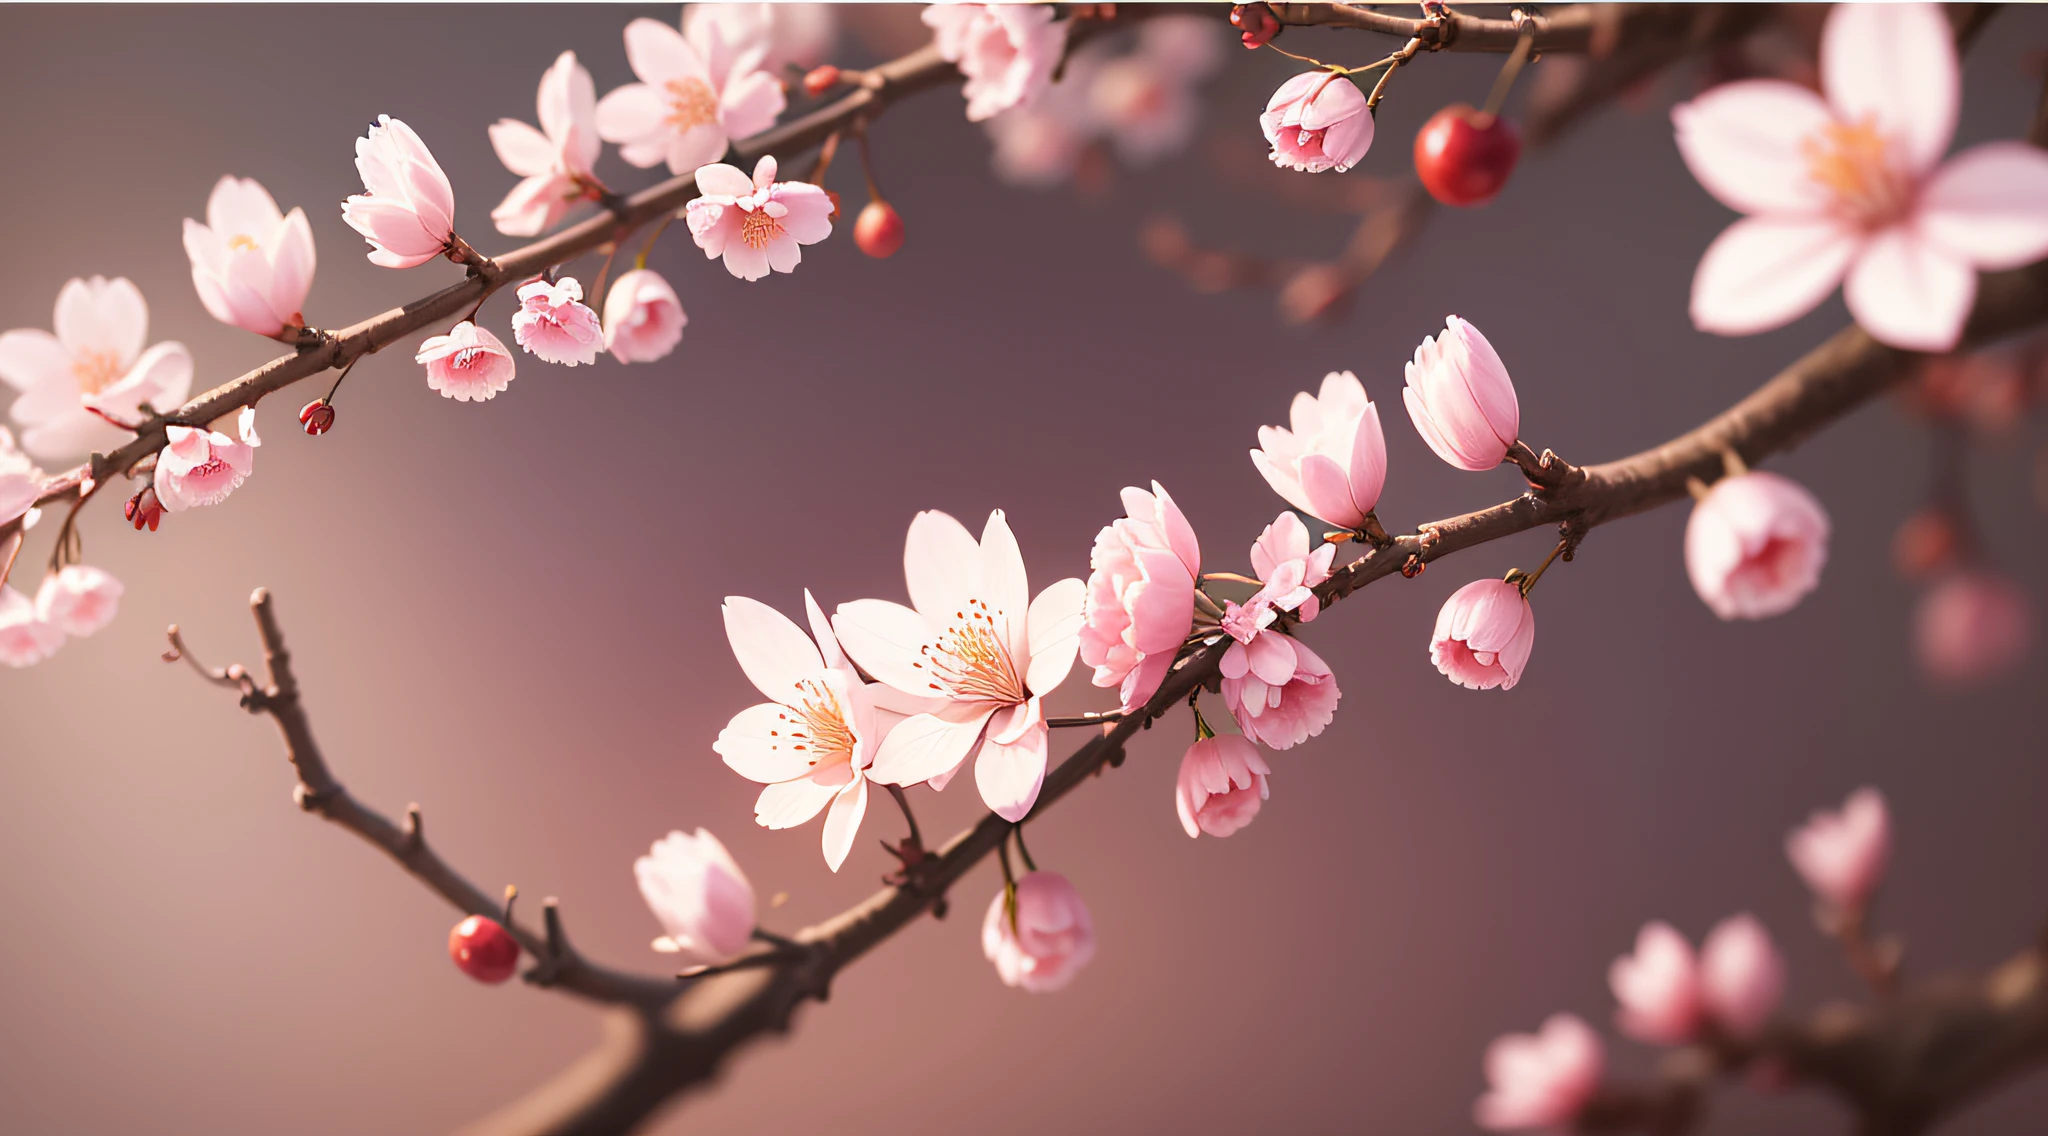 Meisterwerk、Top Qualität、Eine ultrahohe Bildqualität、4K-Bildqualität、Illustration von Kirschblüten in voller Blüte、großer Baum、schöne Farbverläufe、Hintergrundunschärfe